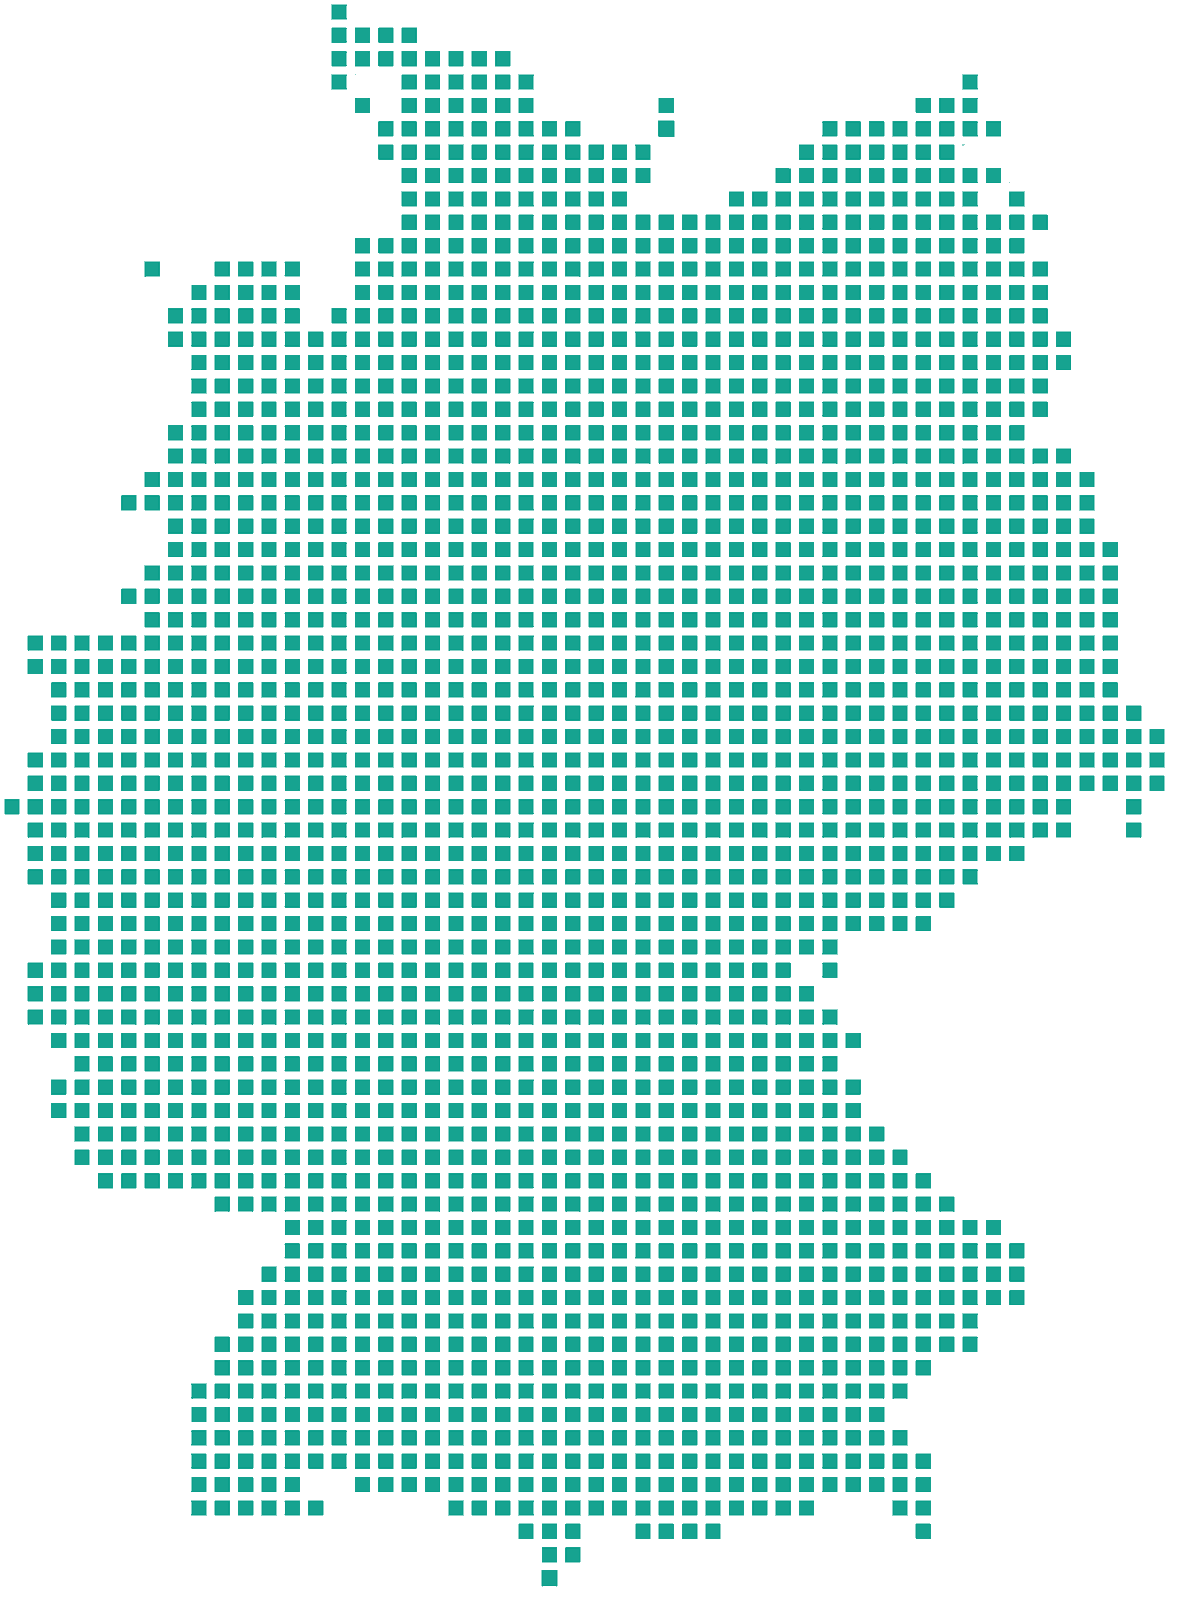 Deutschland -Weiterbildungslandkarte